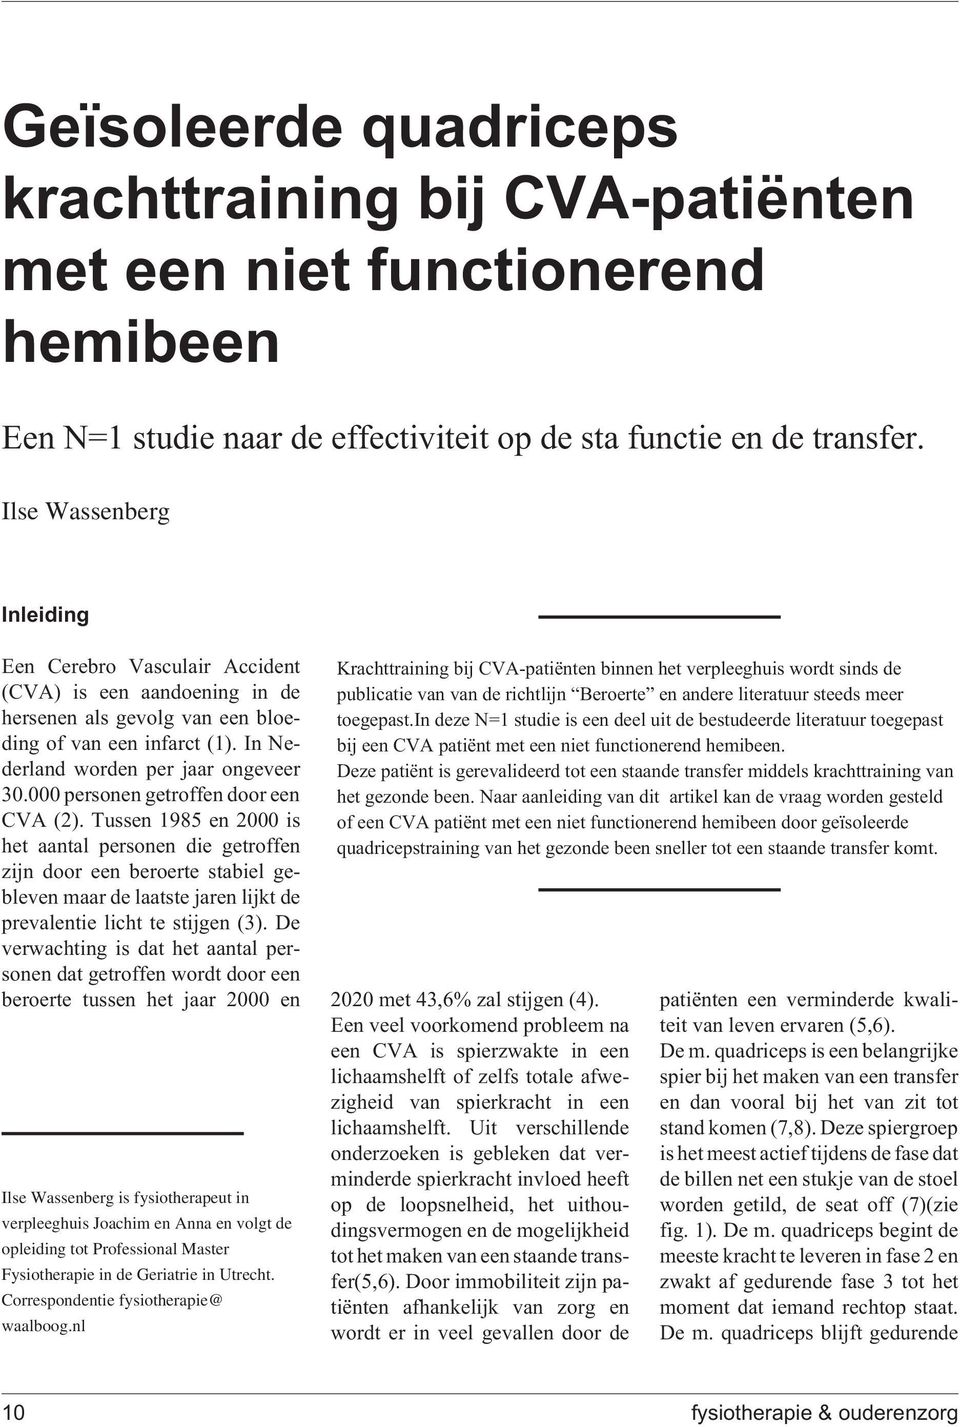 Correspondentie fysiotherapie@ waalboog.nl Krachttraining bij CVA-patiënten binnen het verpleeghuis wordt sinds de publicatie van van de richtlijn Beroerte en andere literatuur steeds meer toegepast.